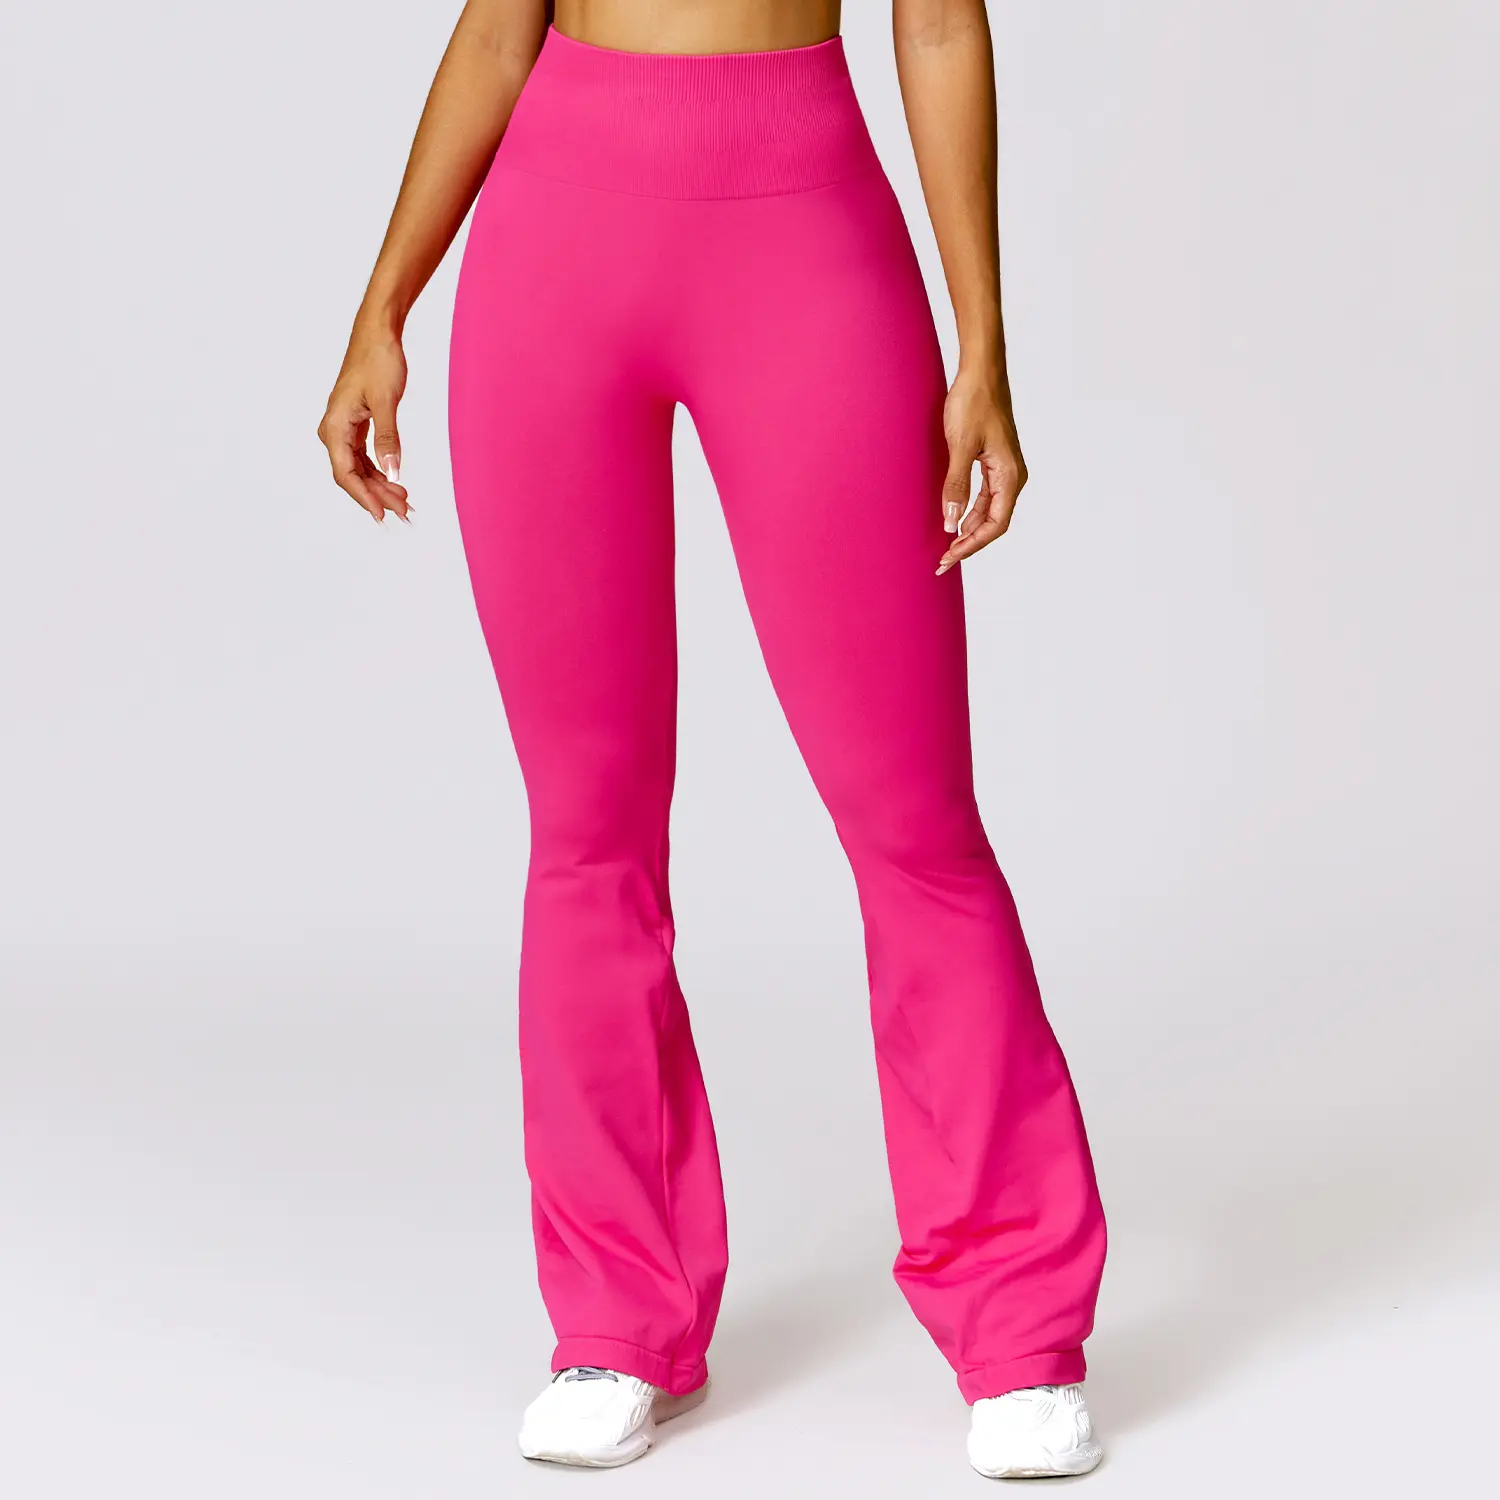 PASUXI Hochwertiges Yoga-Set Sportswear Fitness-Outfit Damen-Sets Nahtlose Sport bekleidung für Frauen Workout Active Wear